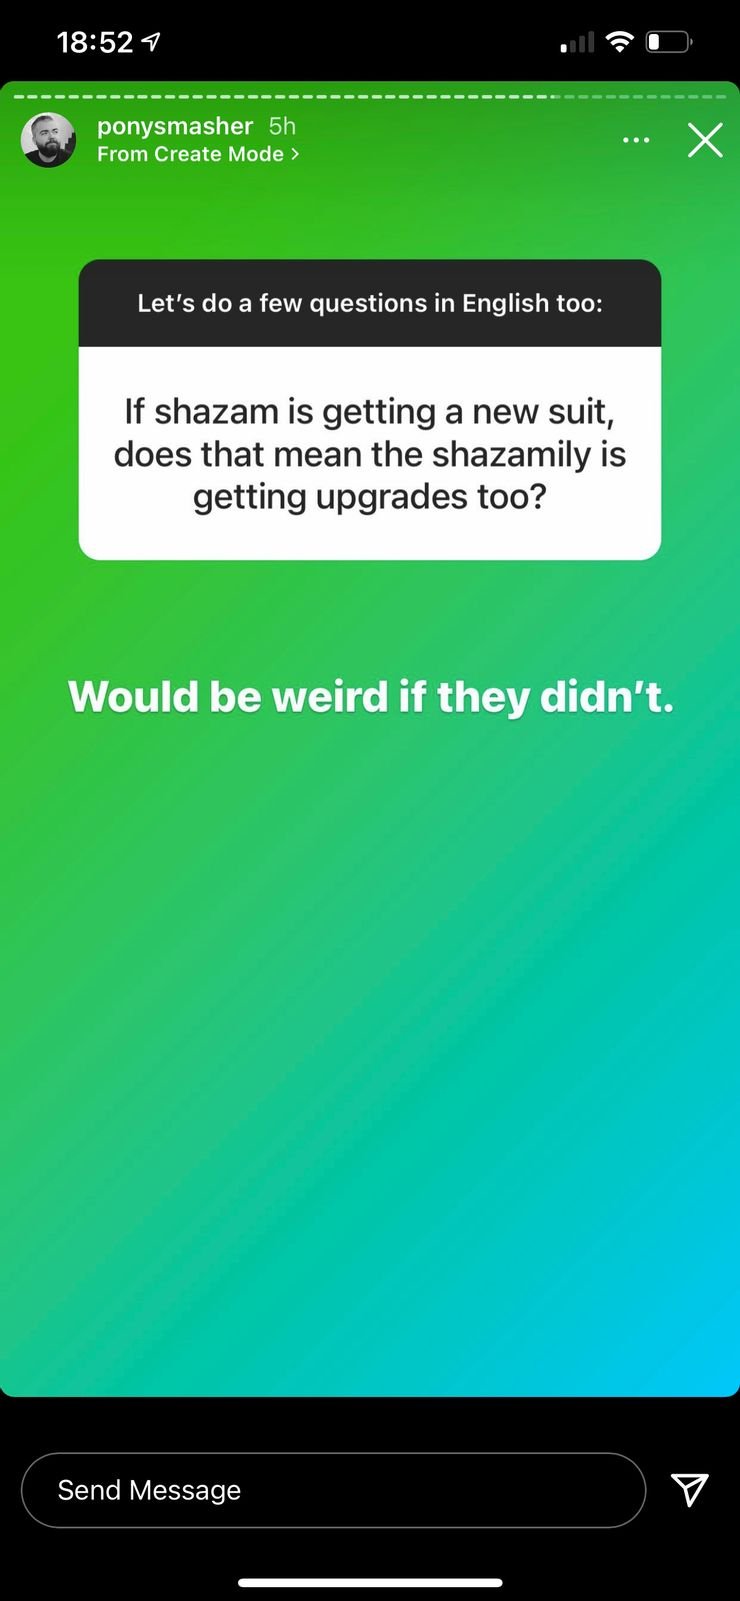 Instagram de David F. Sandberg confirma novos uniformes para a família do Shazam